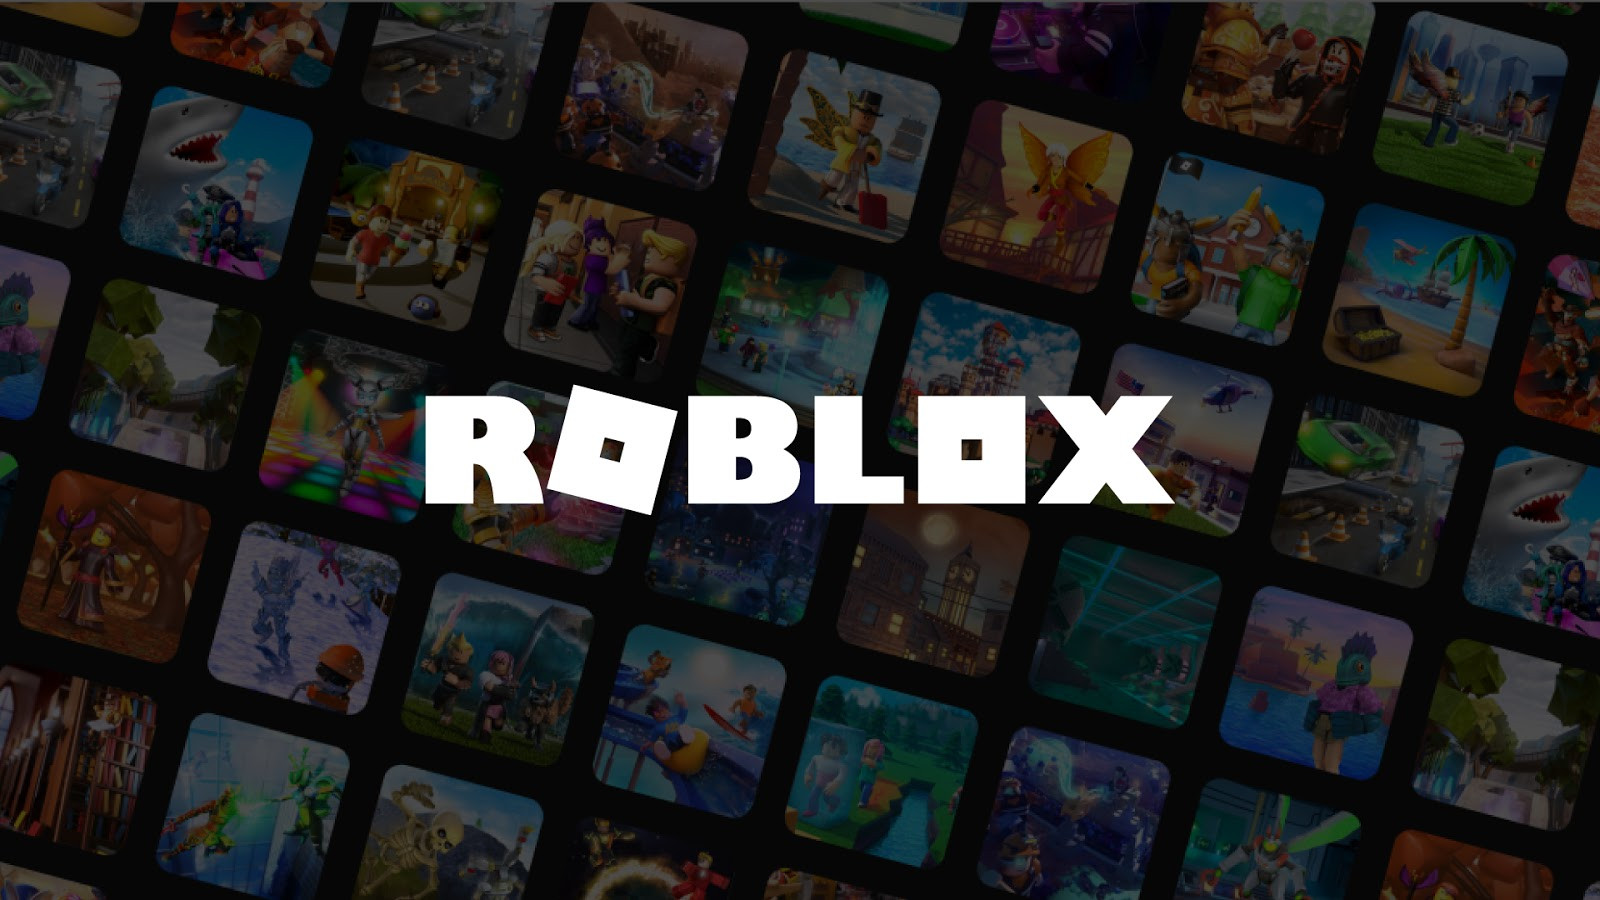 Jugar Roblox Sin Descargar - jugar roblox online gratis sin descargar